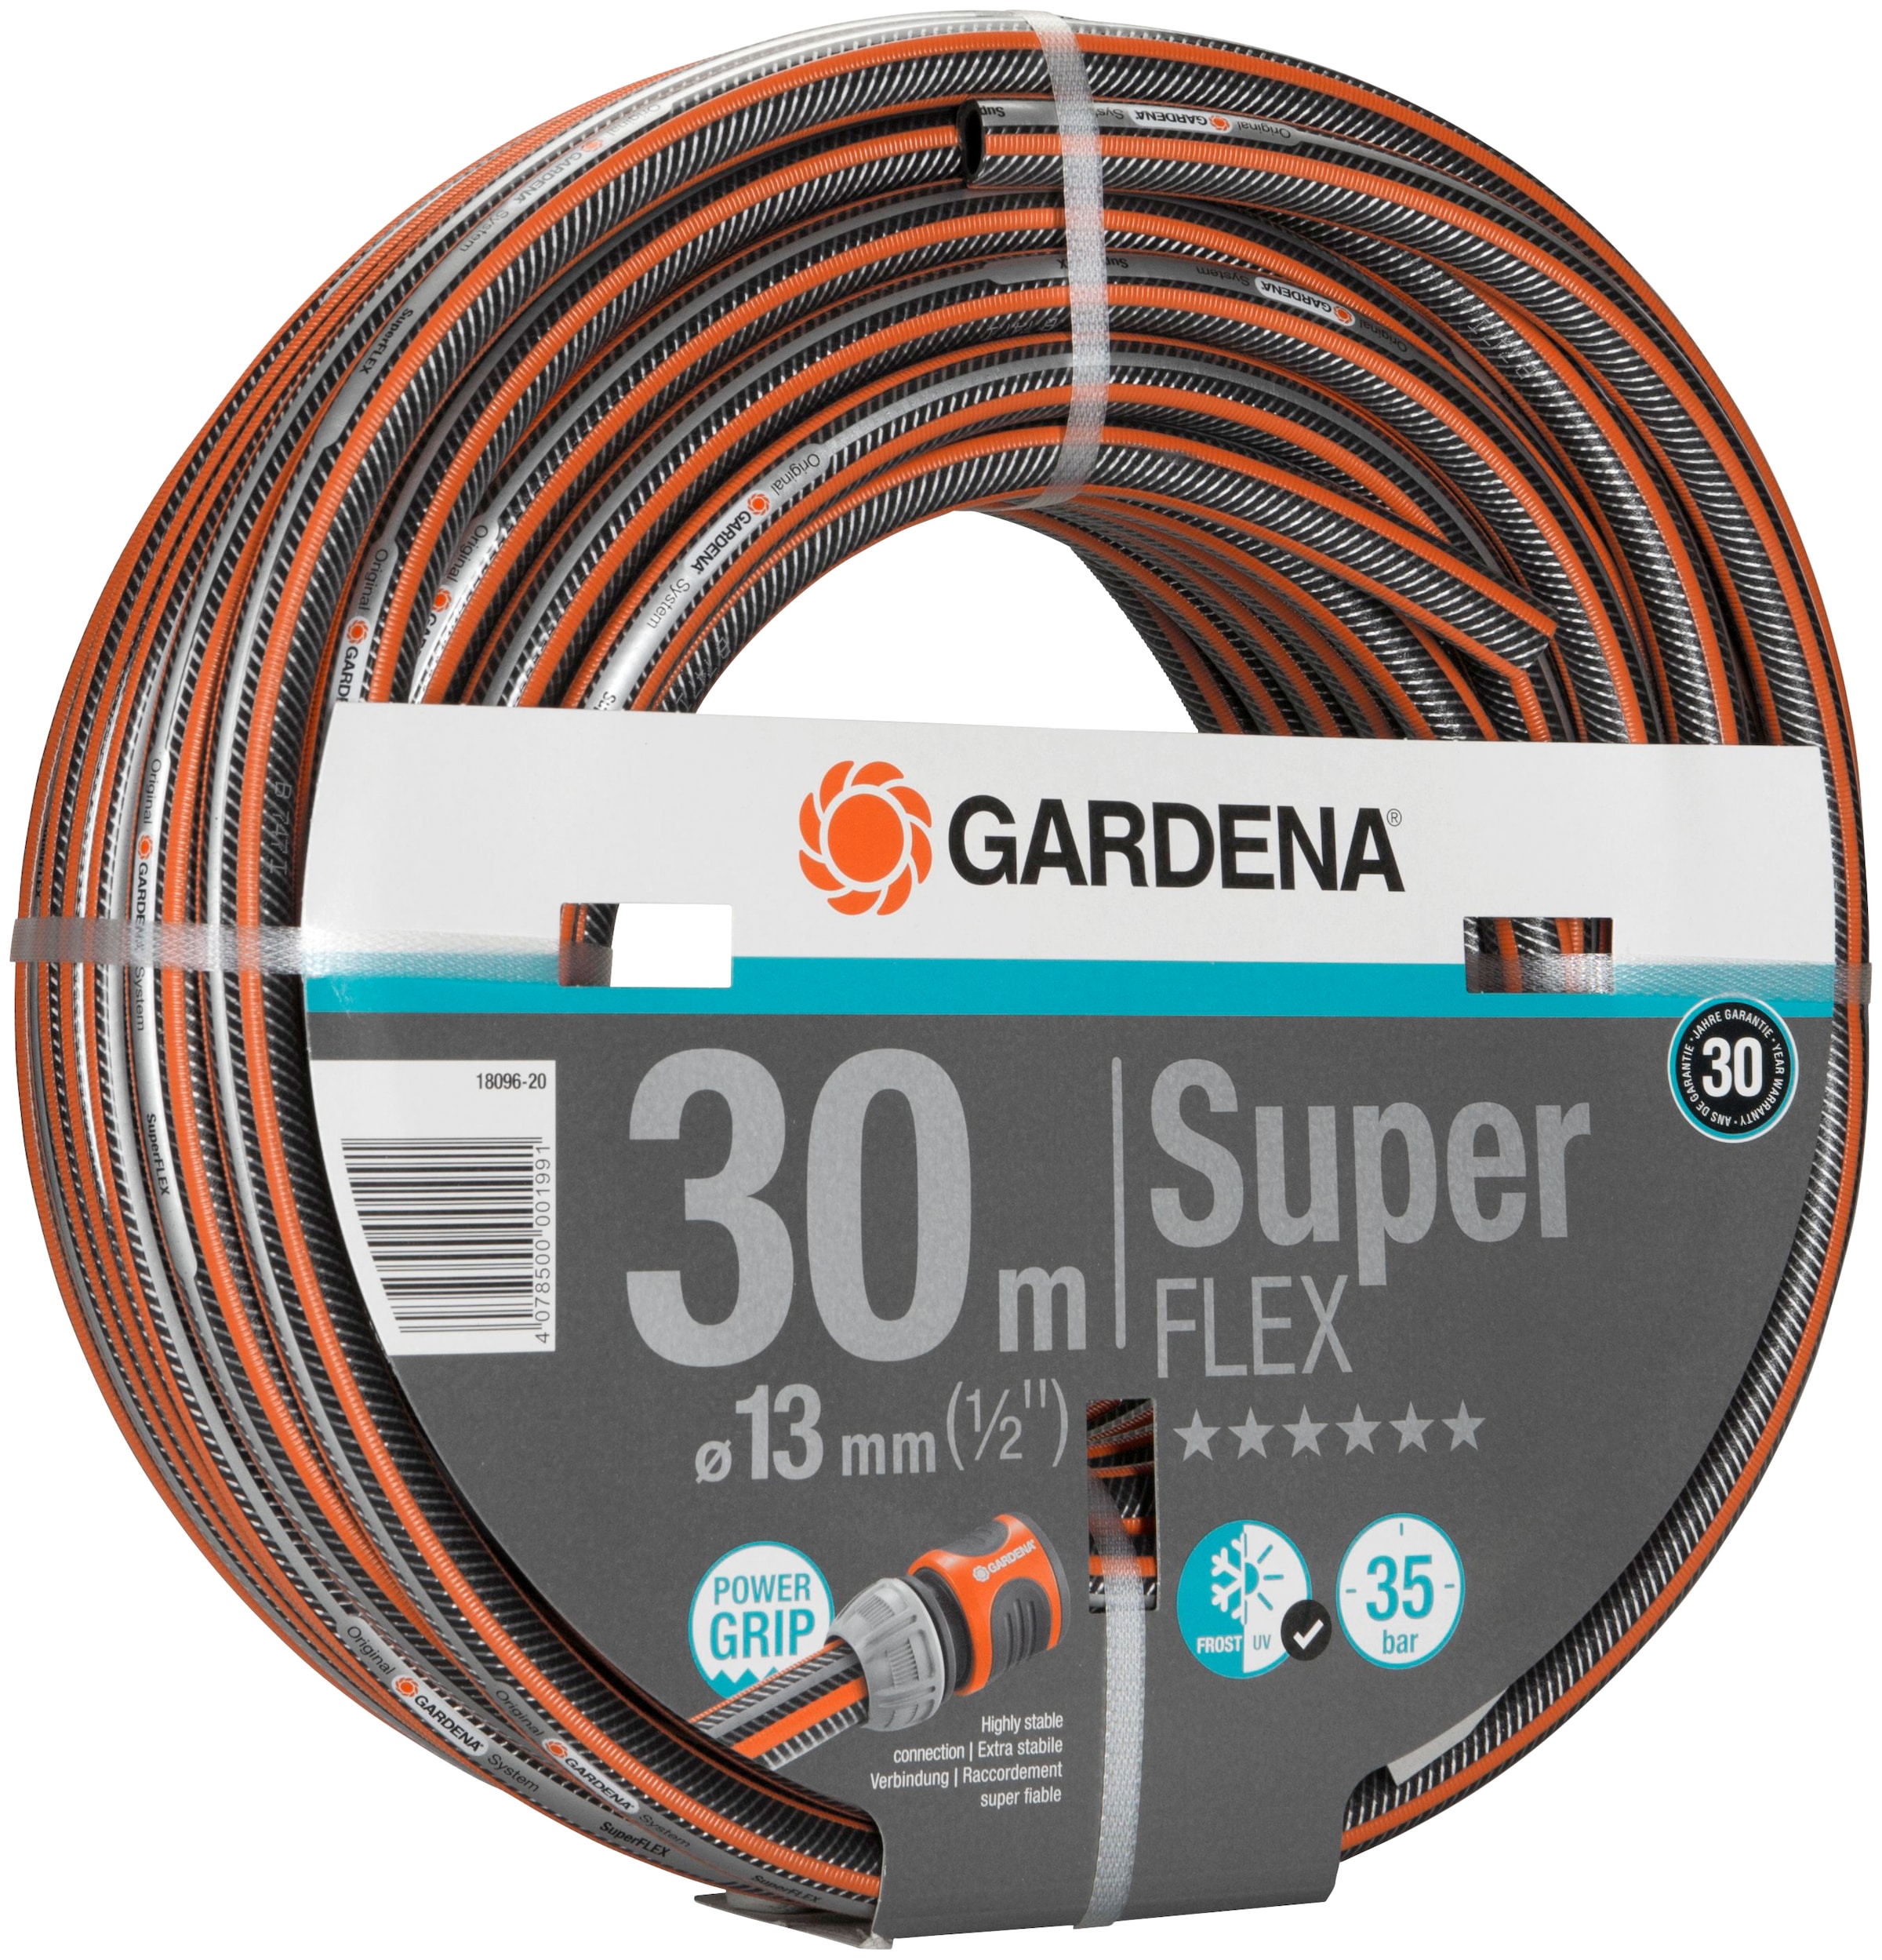 GARDENA Gartenschlauch »Premium SuperFLEX 1809...